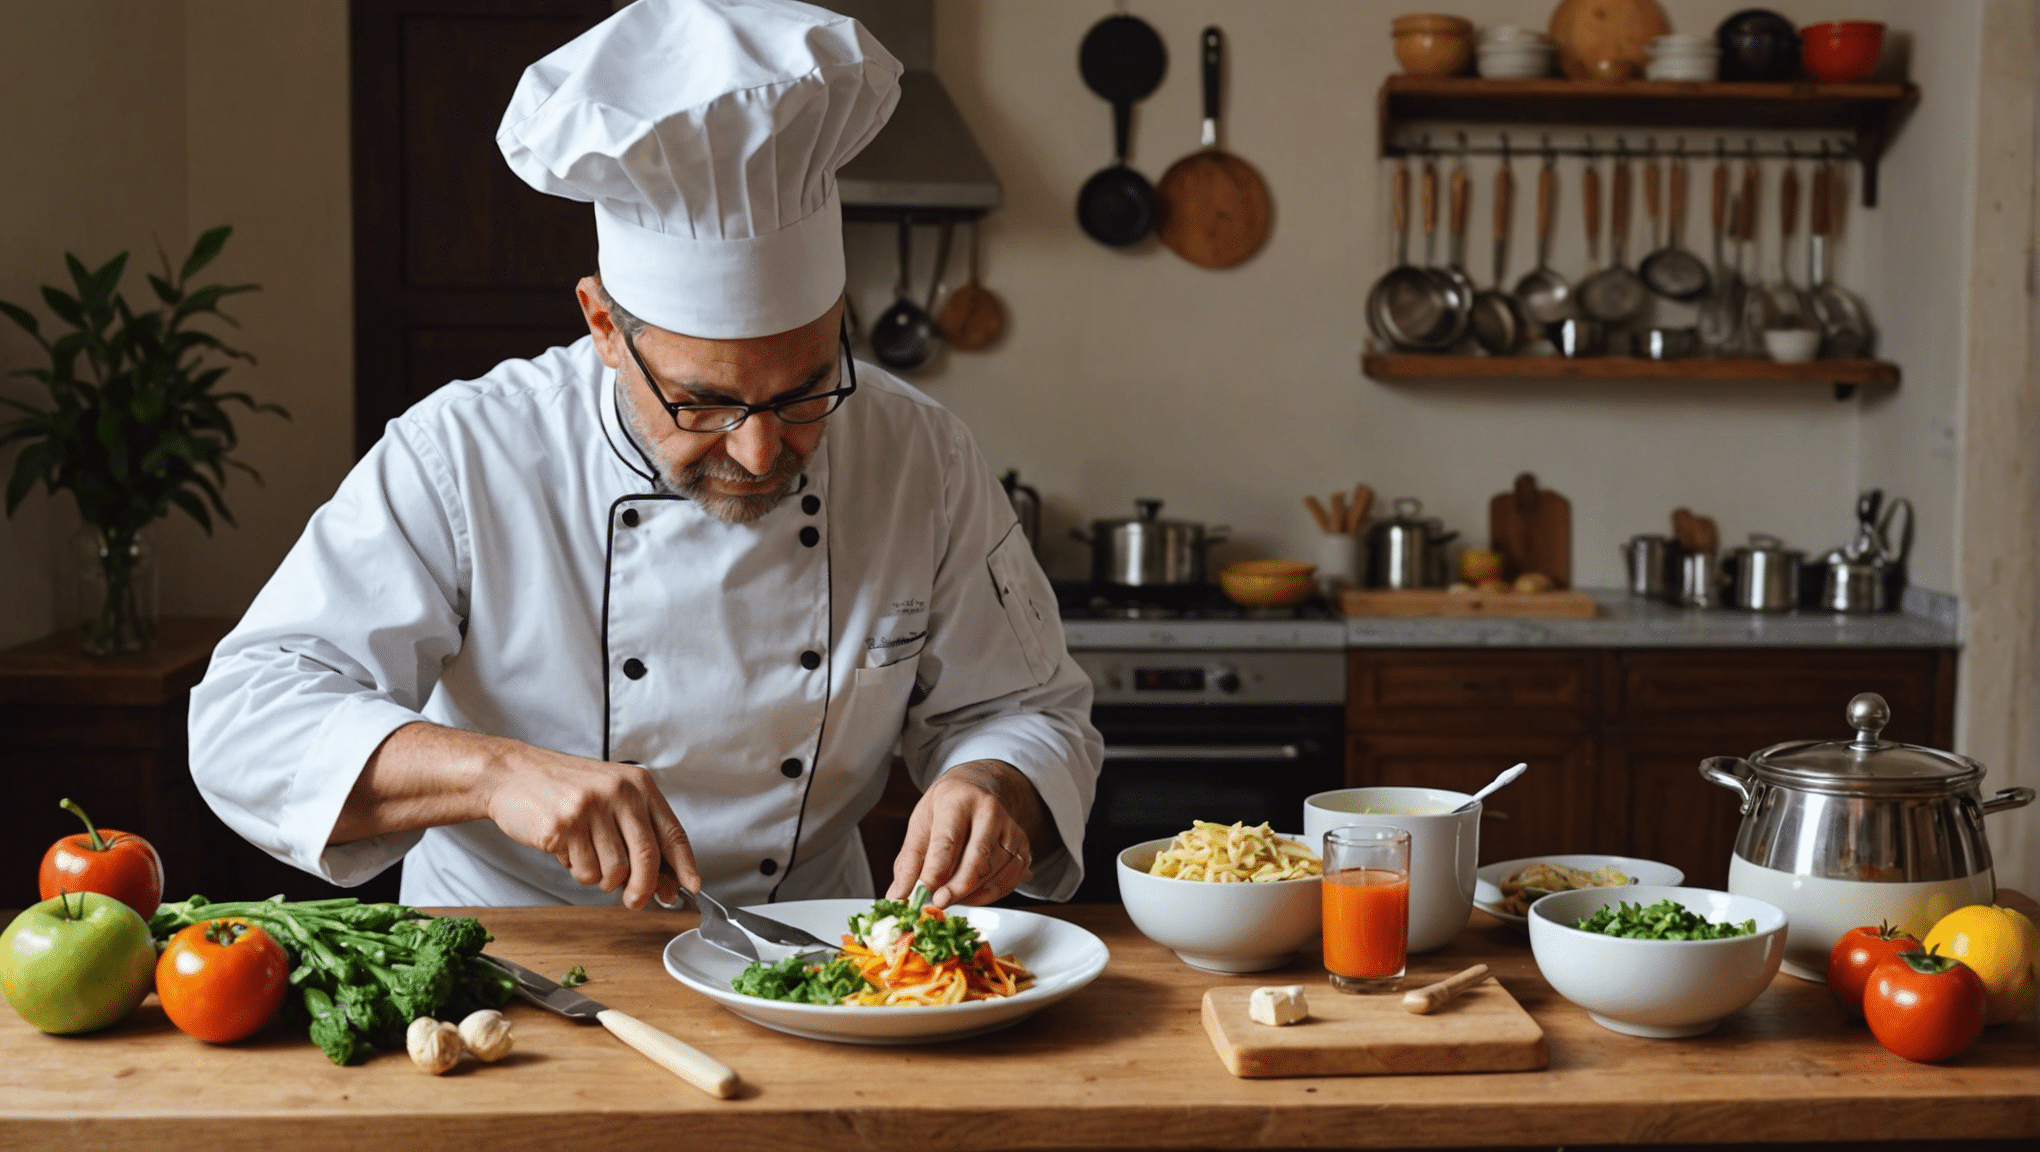 découvrez l'art culinaire à travers une cuisine créative et artistique avec nos délicieuses recettes innovantes et nos astuces de chefs passionnés.